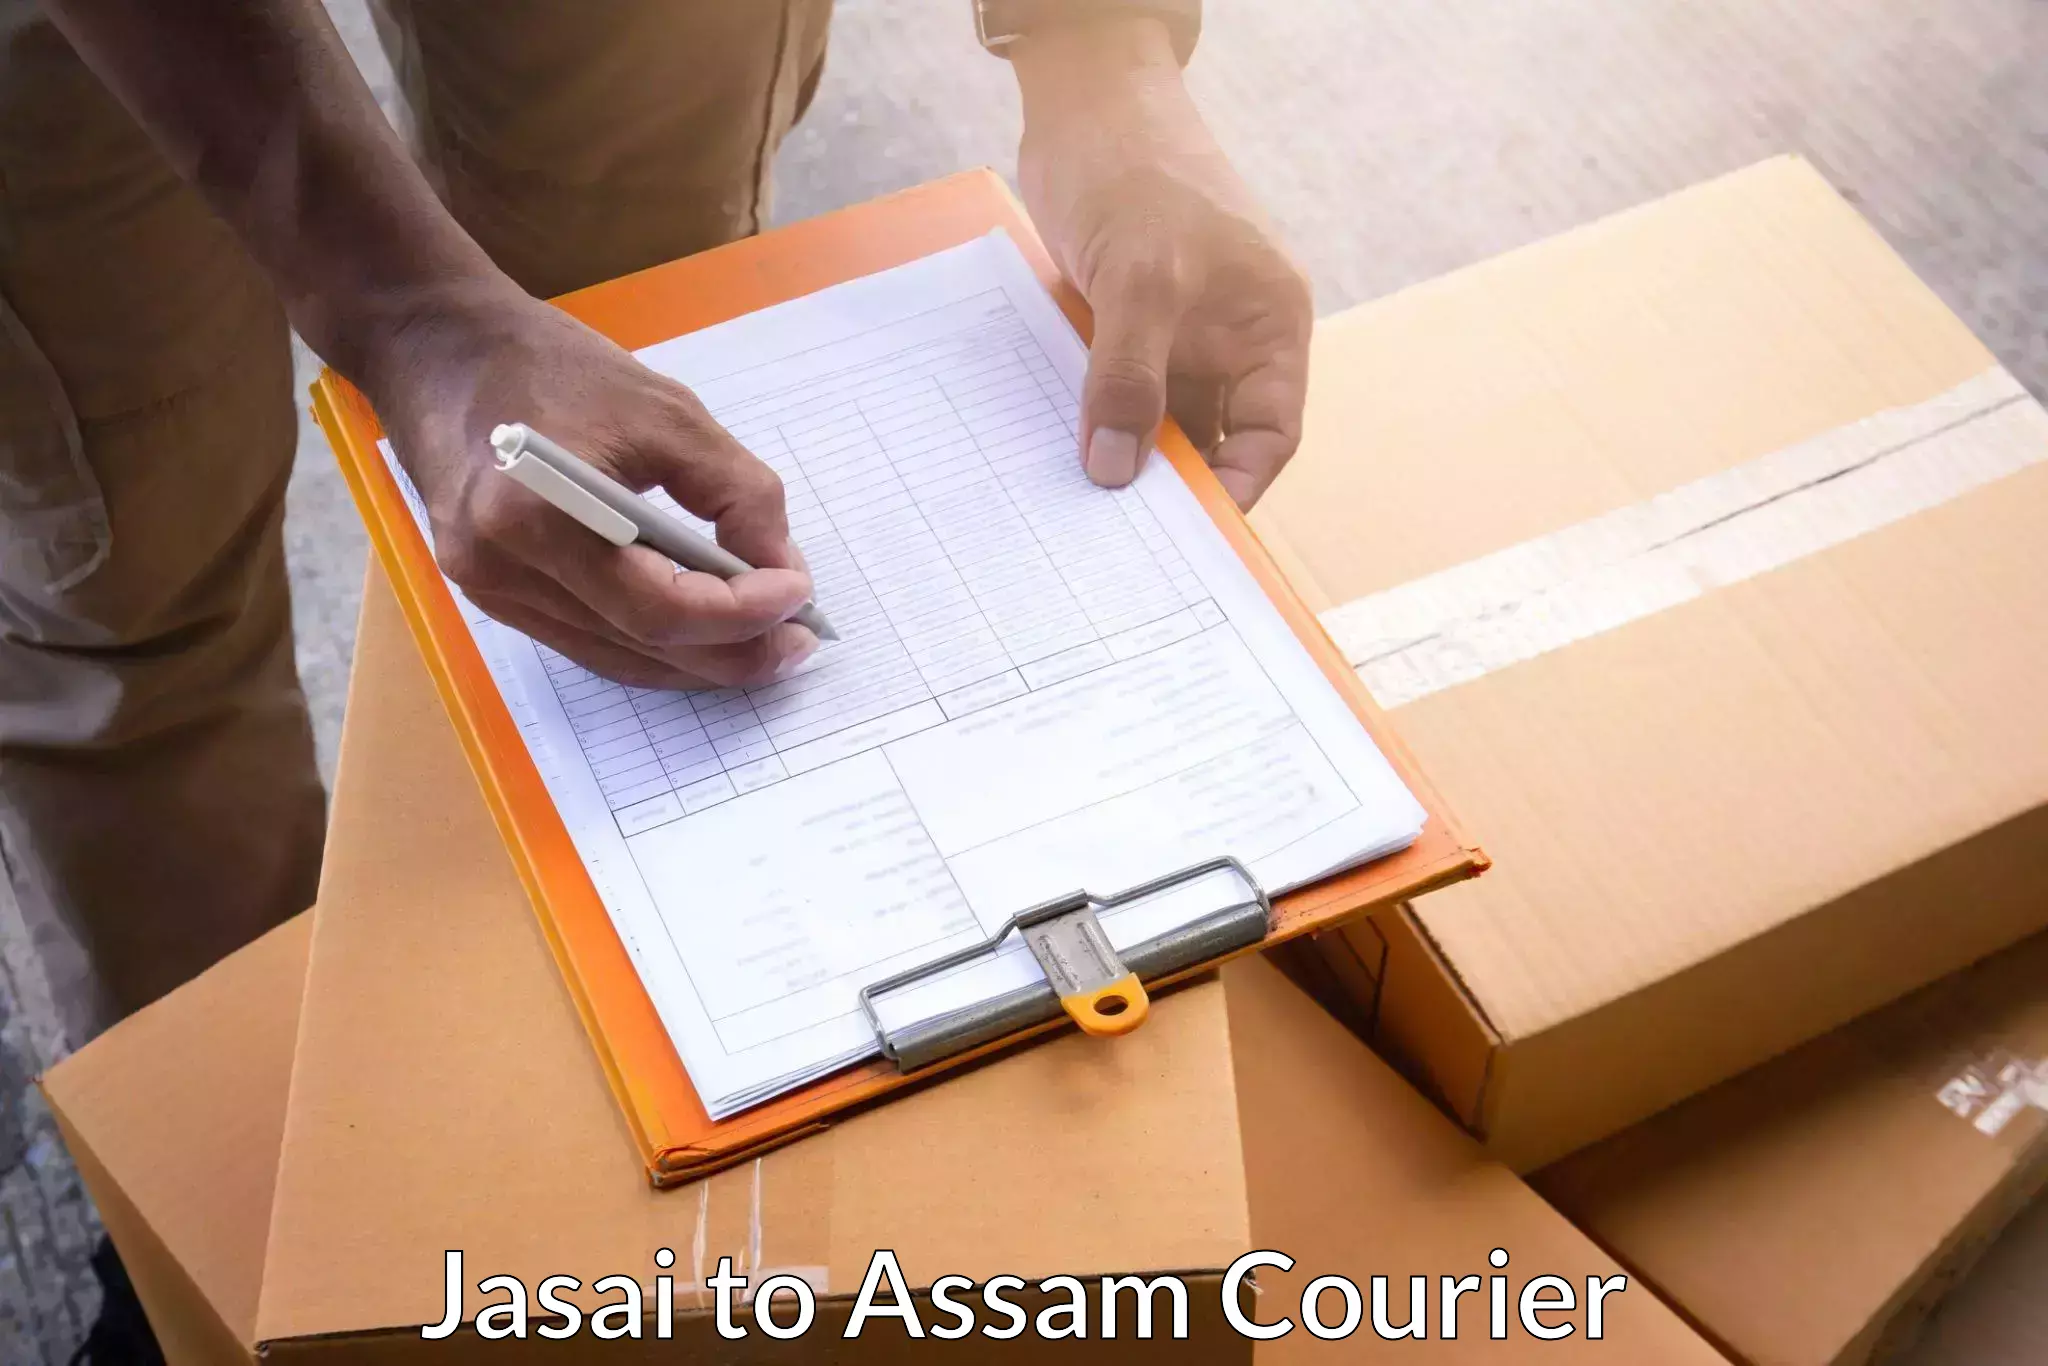 Express package handling Jasai to Assam